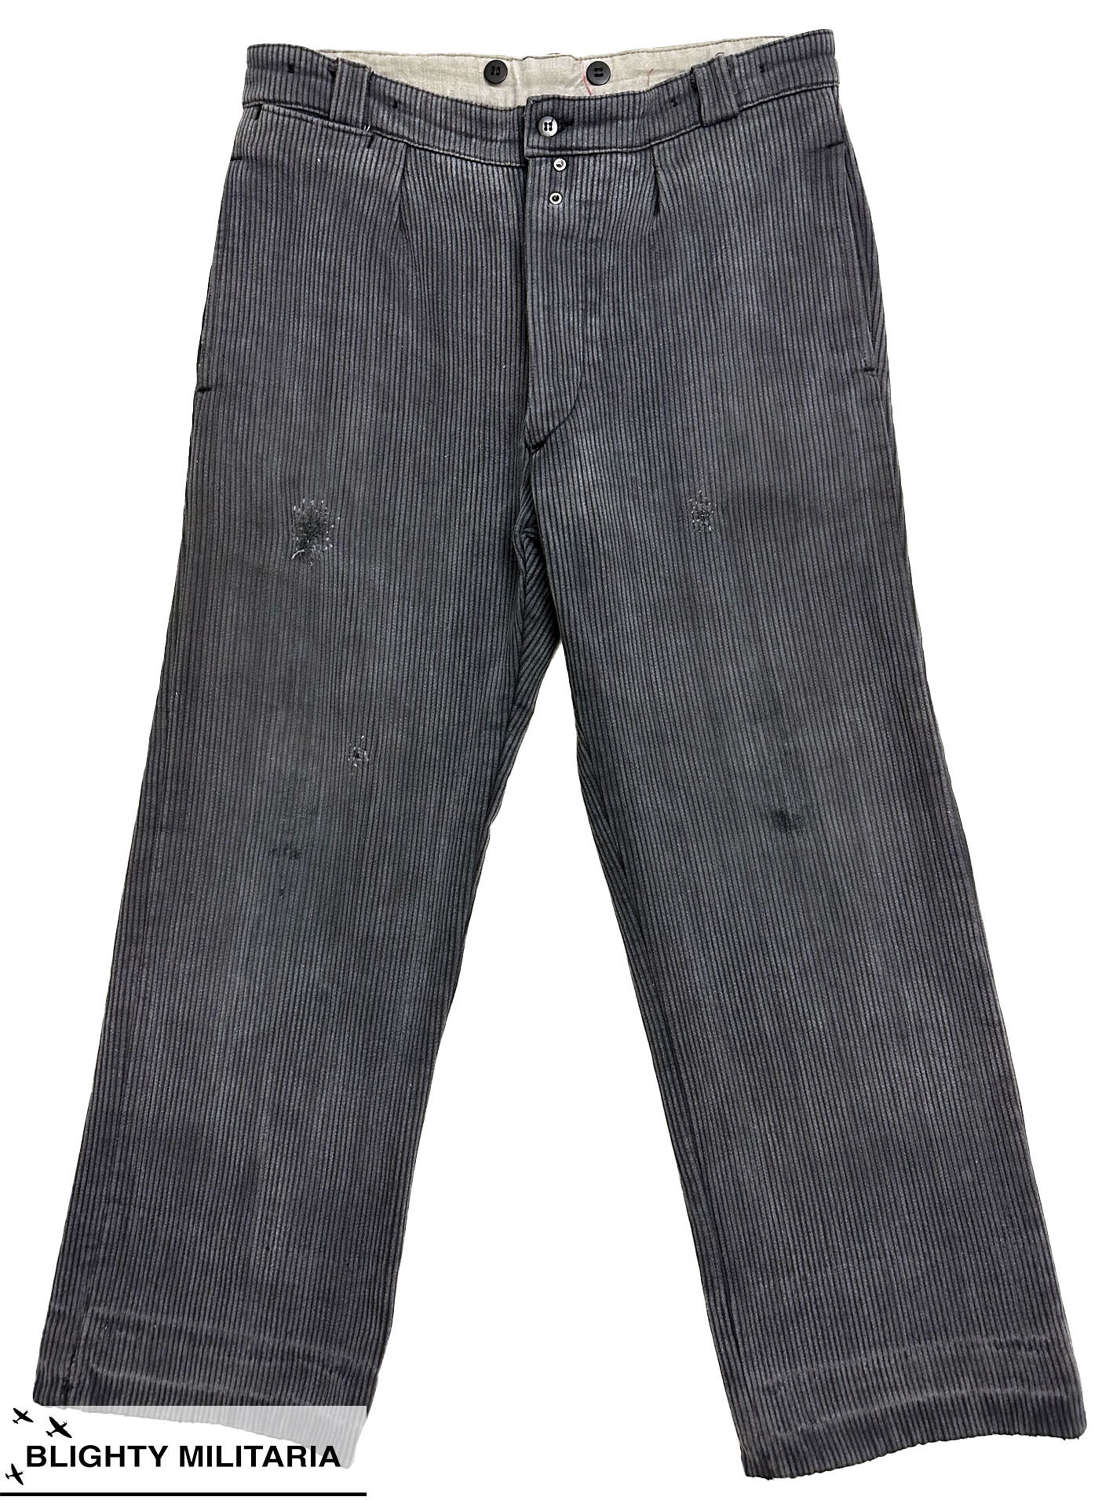 Original 1950s French Grey Corduroy Workwear Trousers - Size 33x27